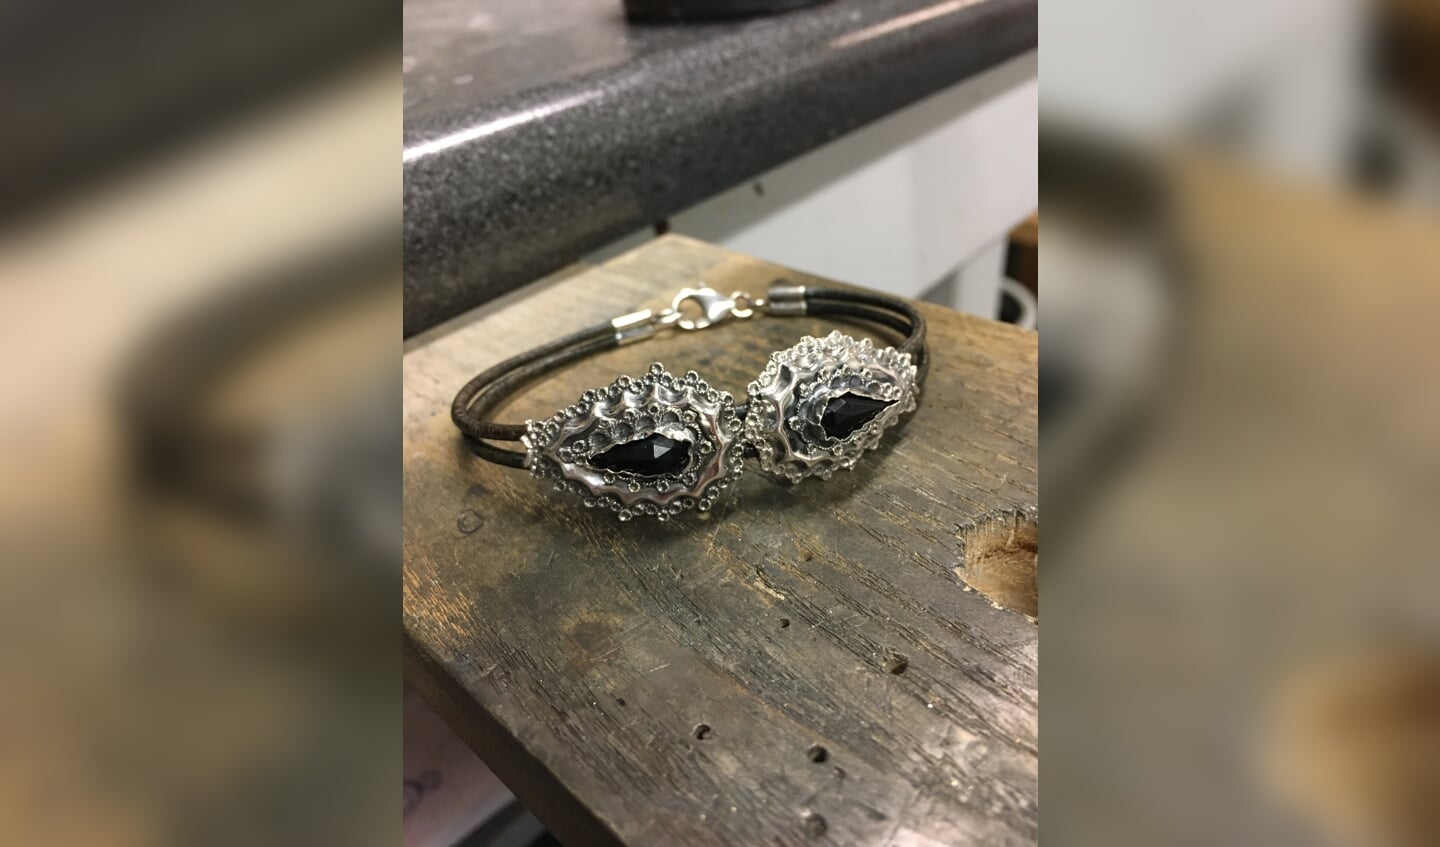 Twee oude zilveren oorbellen verwerkt in een armband met leer.